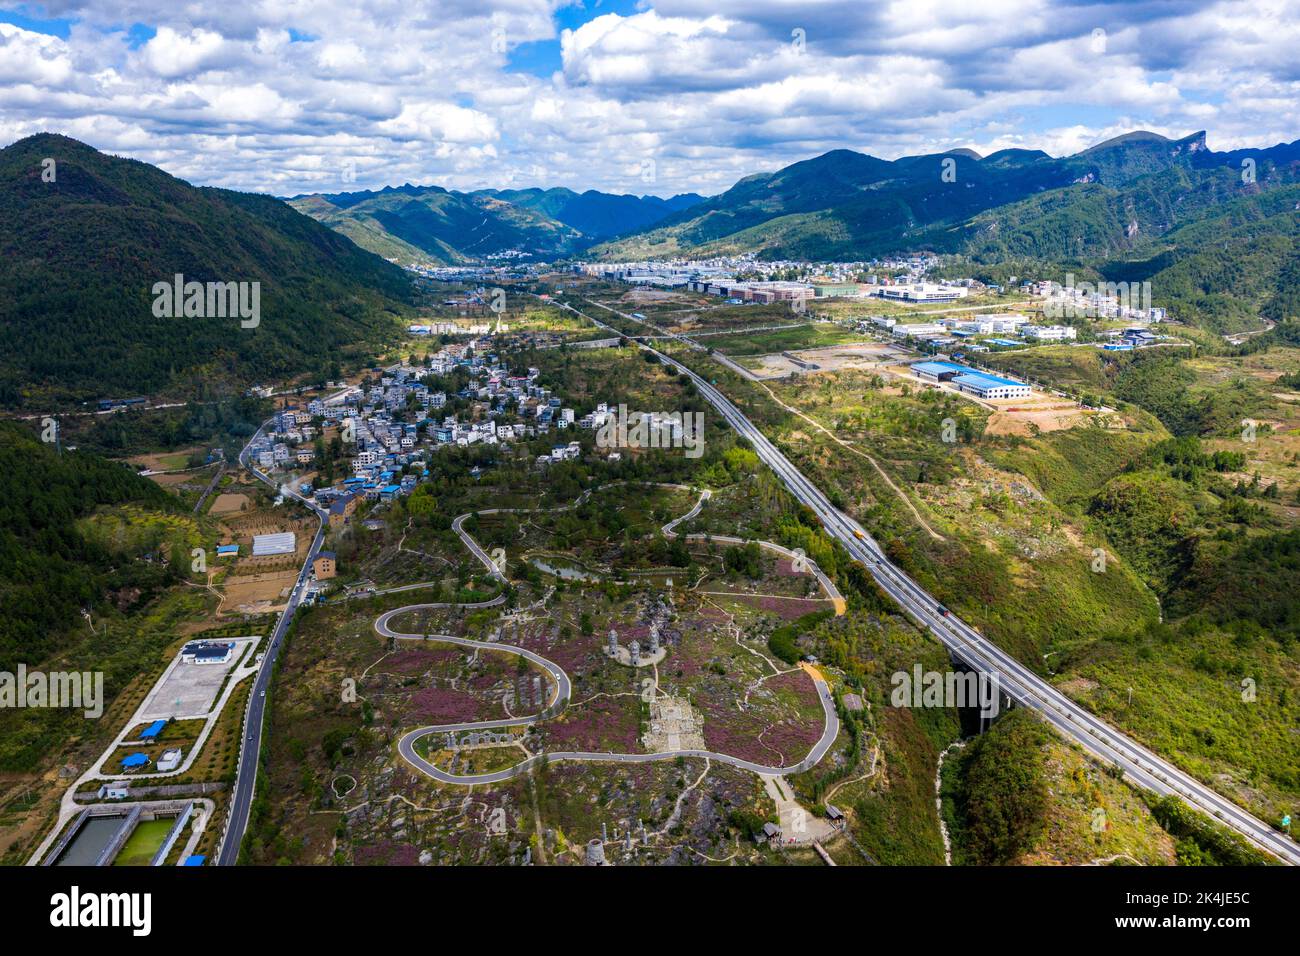 Chongqing. 2nd octobre 2022. La photo aérienne prise le 2 octobre 2022 montre une région pittoresque de la ville de Banxi, Youyang Tujia et du comté autonome de Miao, dans la municipalité de Chongqing, au sud-ouest de la Chine. Credit: Liu Chan/Xinhua/Alay Live News Banque D'Images